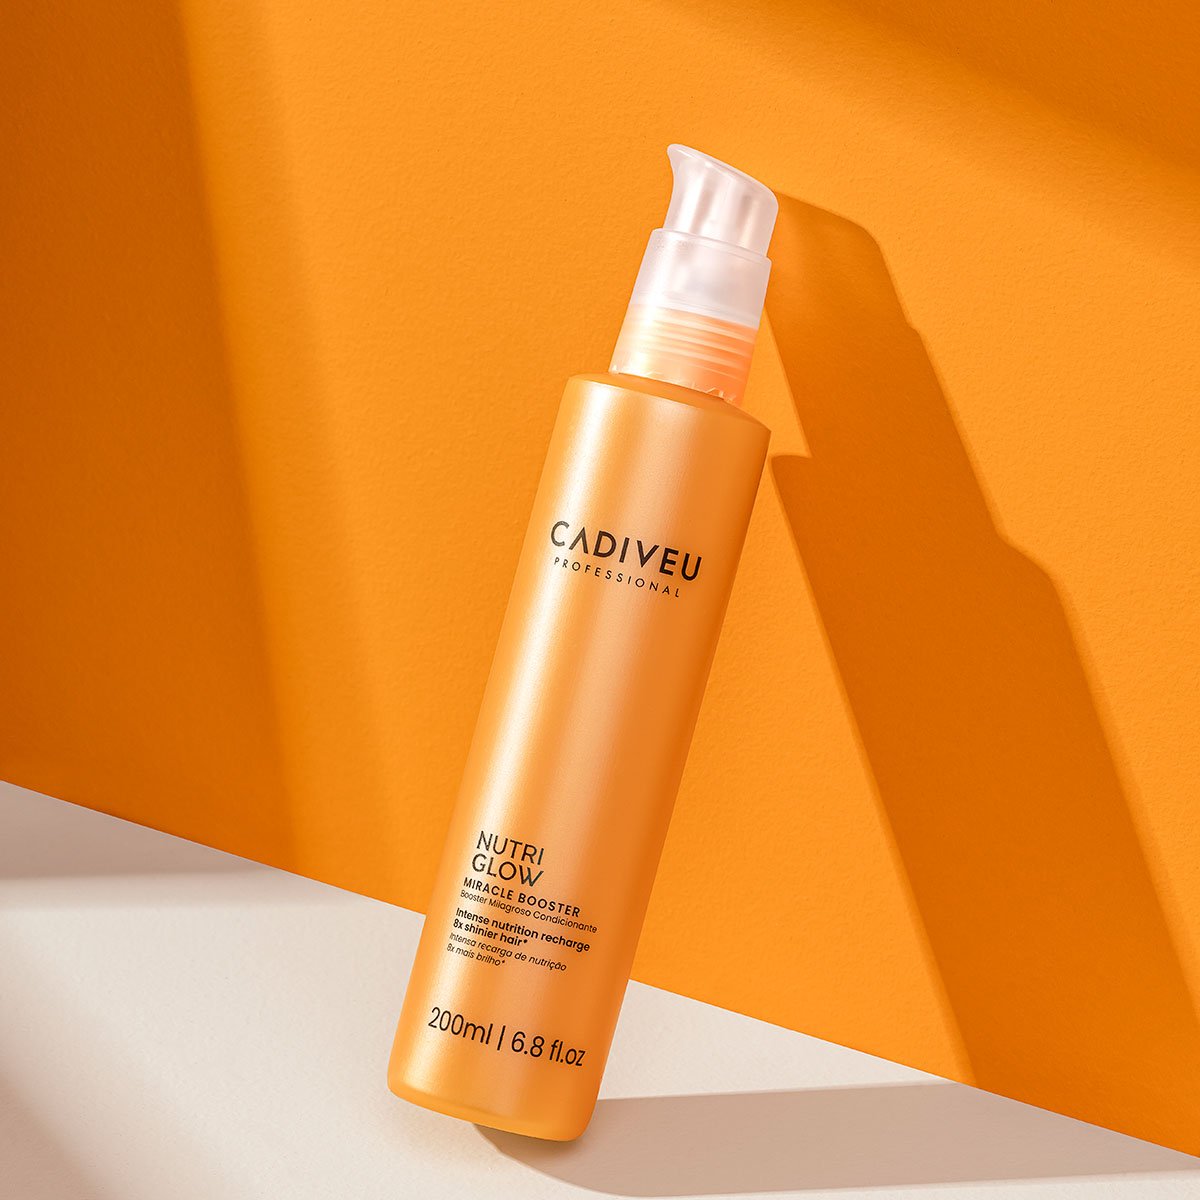 Kit Cadiveu Essentials Hair Remedy Shampoo Condicionador Leave-in Serum e Nutri Glow Booster (4 produtos) ÚNICO 4